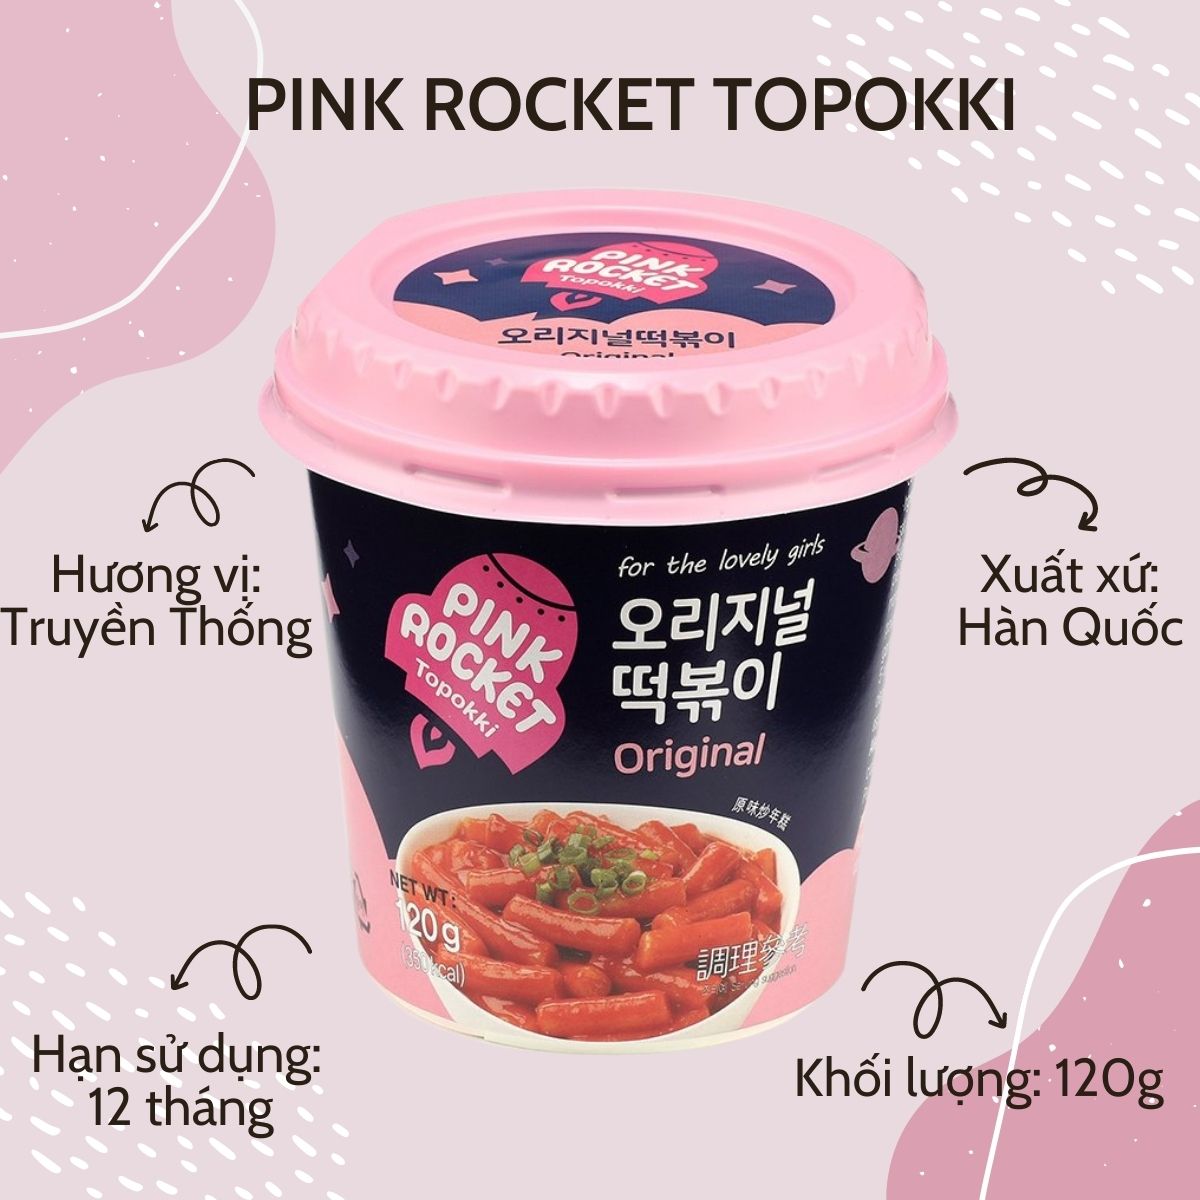 Bánh gạo Topokki Rocket Pink vị Truyền Thống